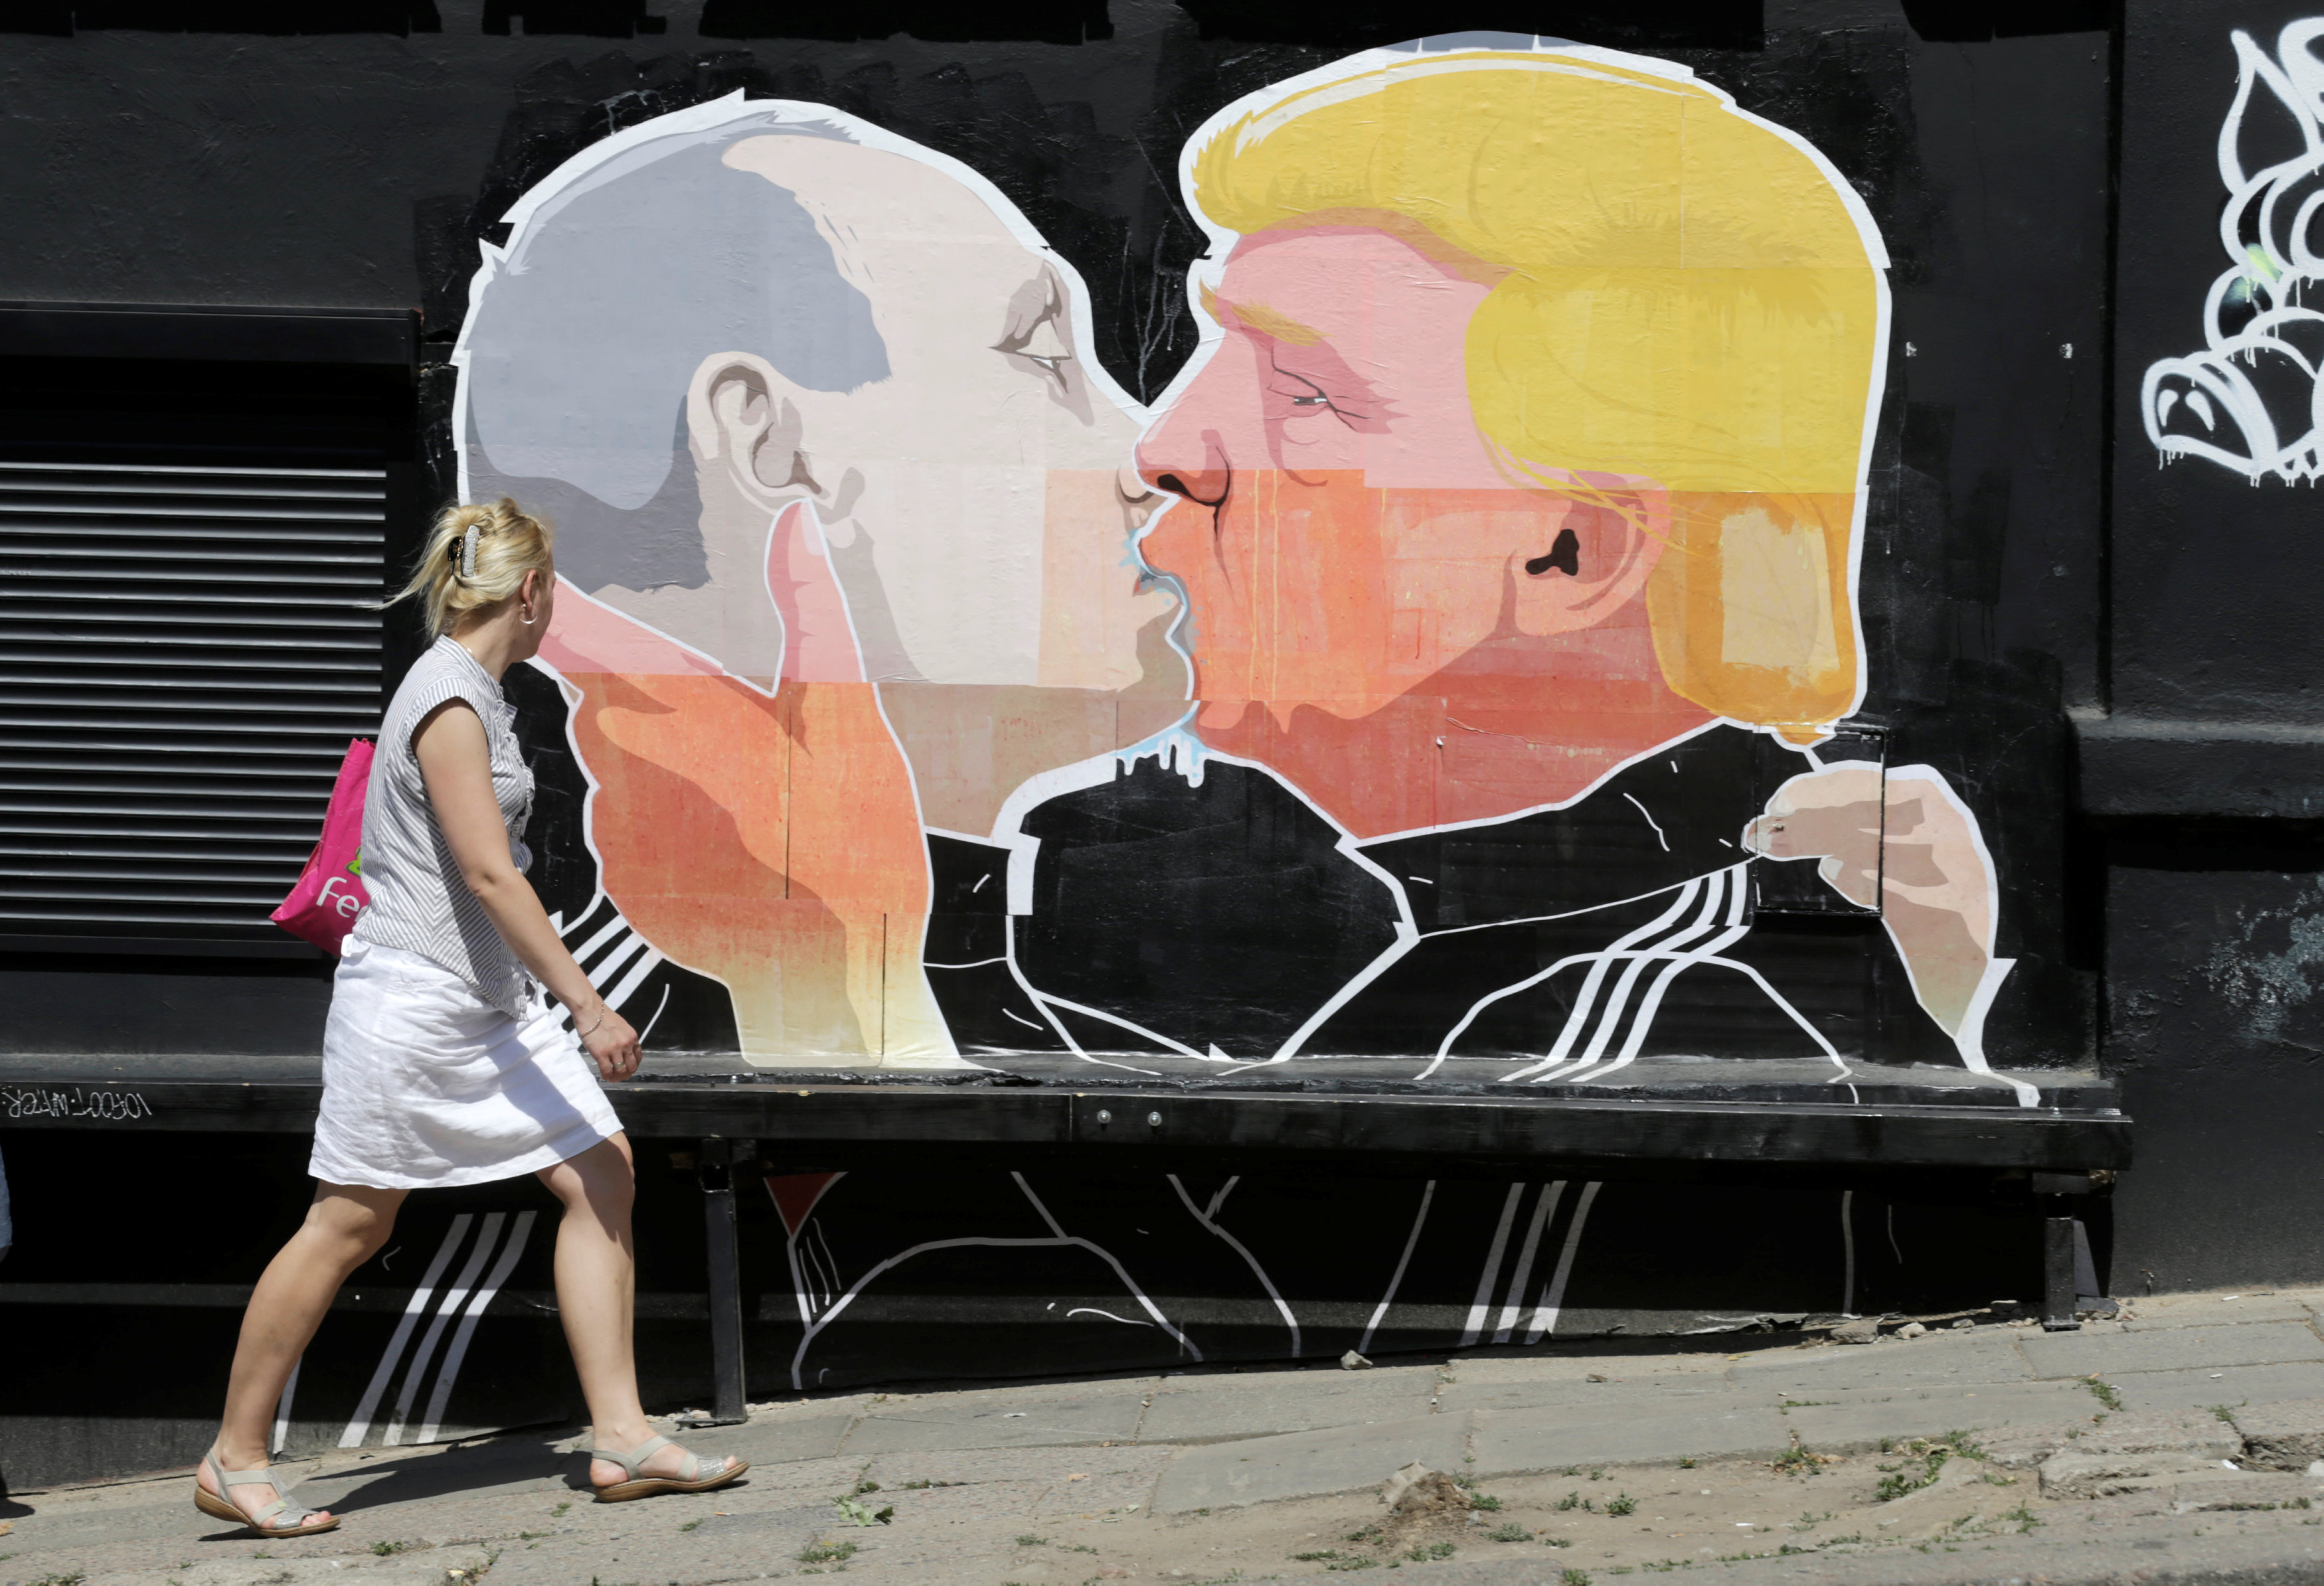  “No tengo nada qué ver con Rusia”, dice Donald Trump